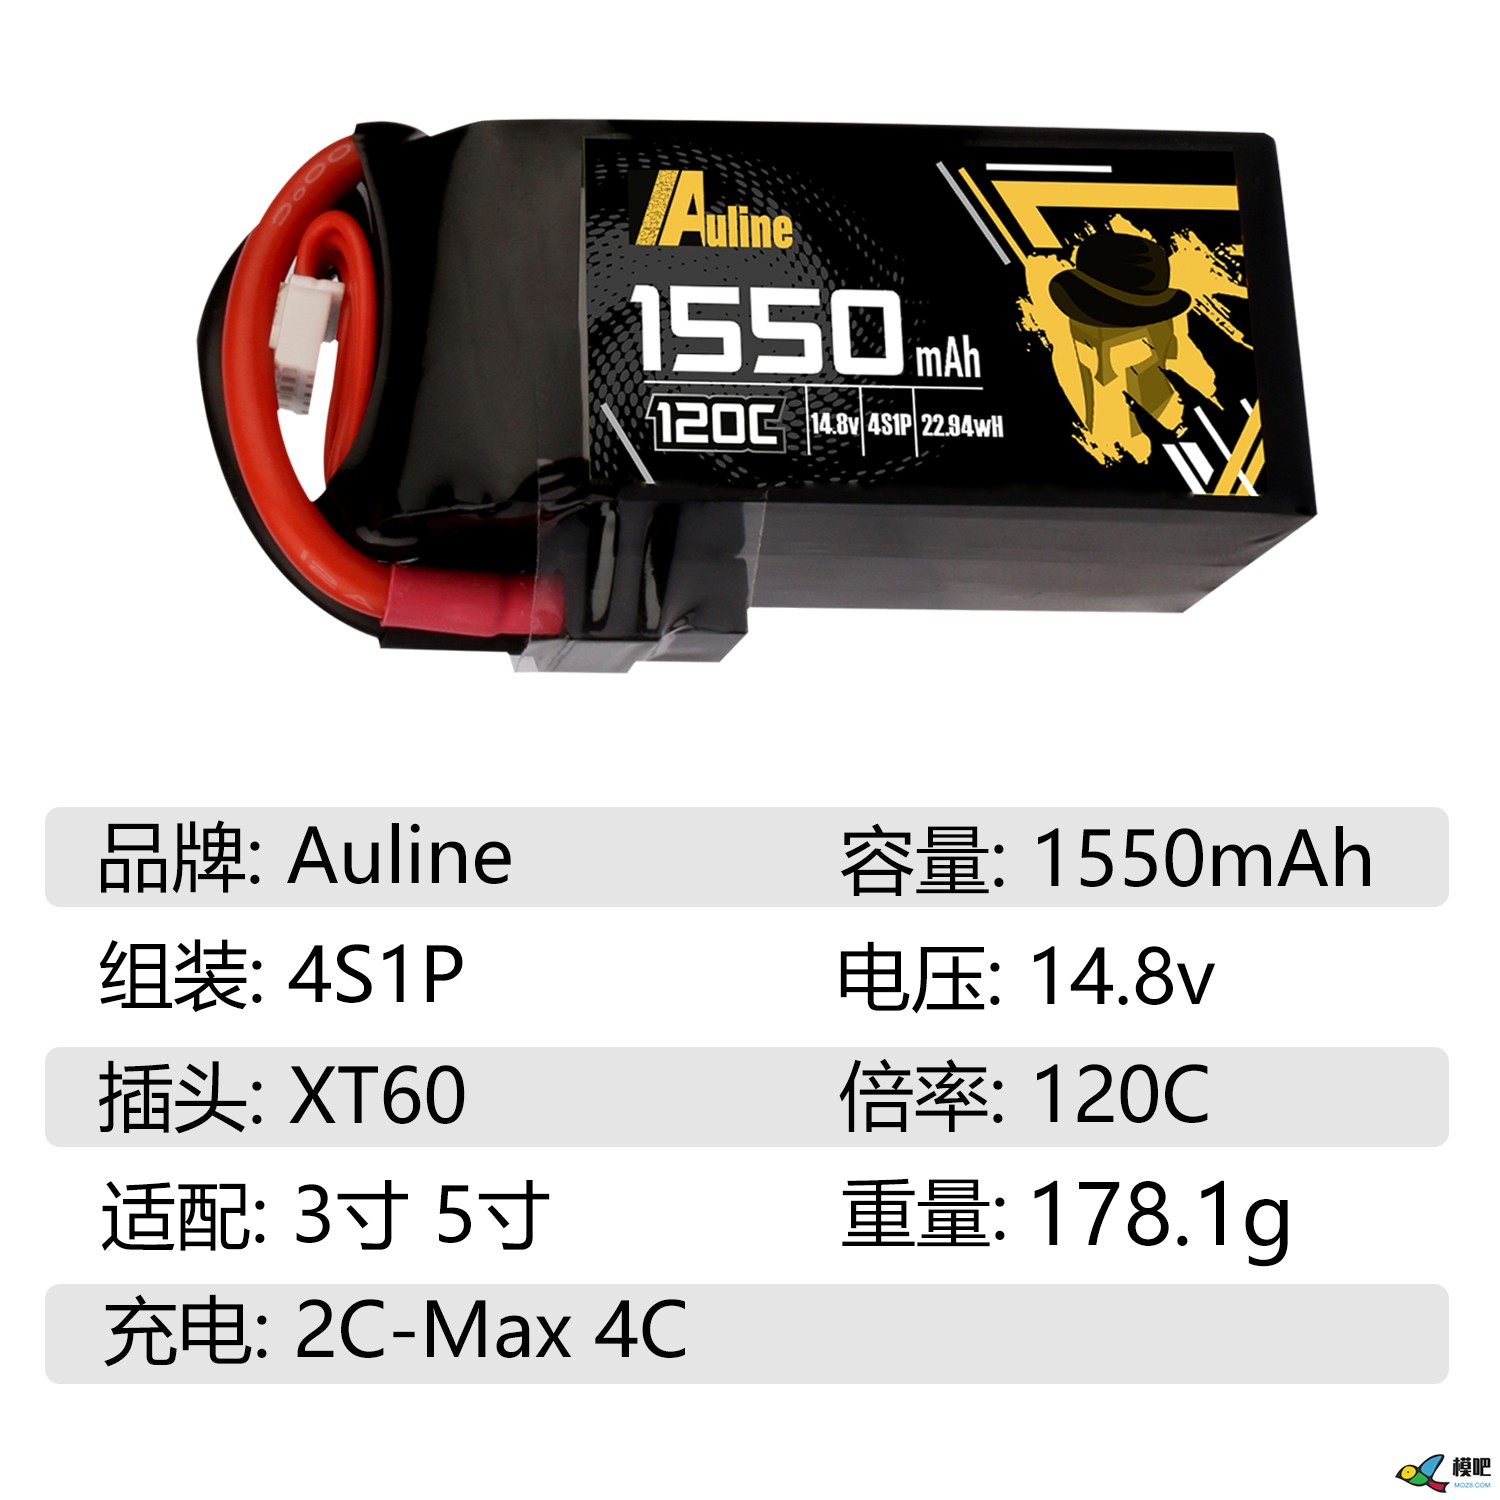 第七期测评活动：Auline品牌1550mAh高倍率锂电池测评邀请 穿越机,模型,固定翼,电池,飞控 作者:小兔子 3848 